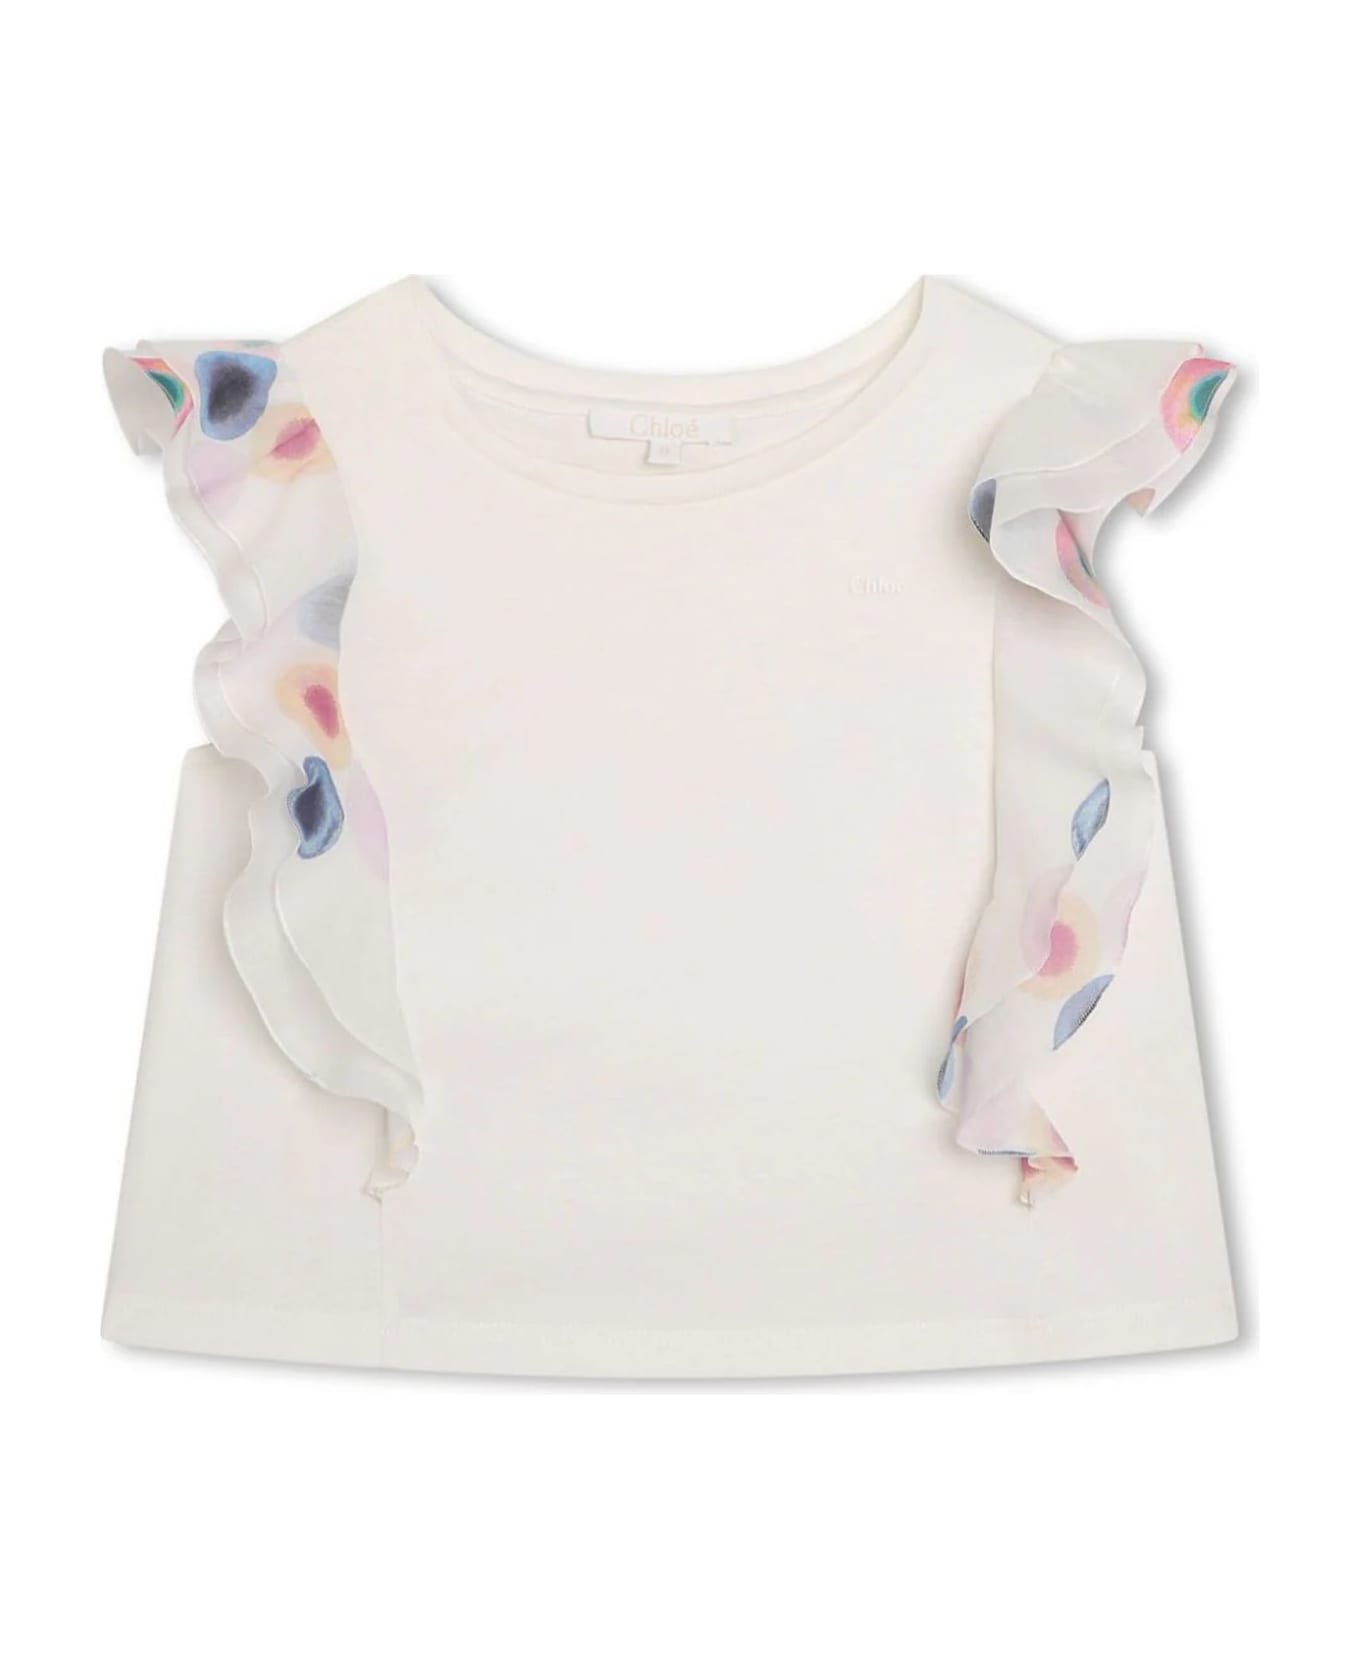 Chloé Chloè Kids T-shirts And Polos White - White Tシャツ＆ポロシャツ